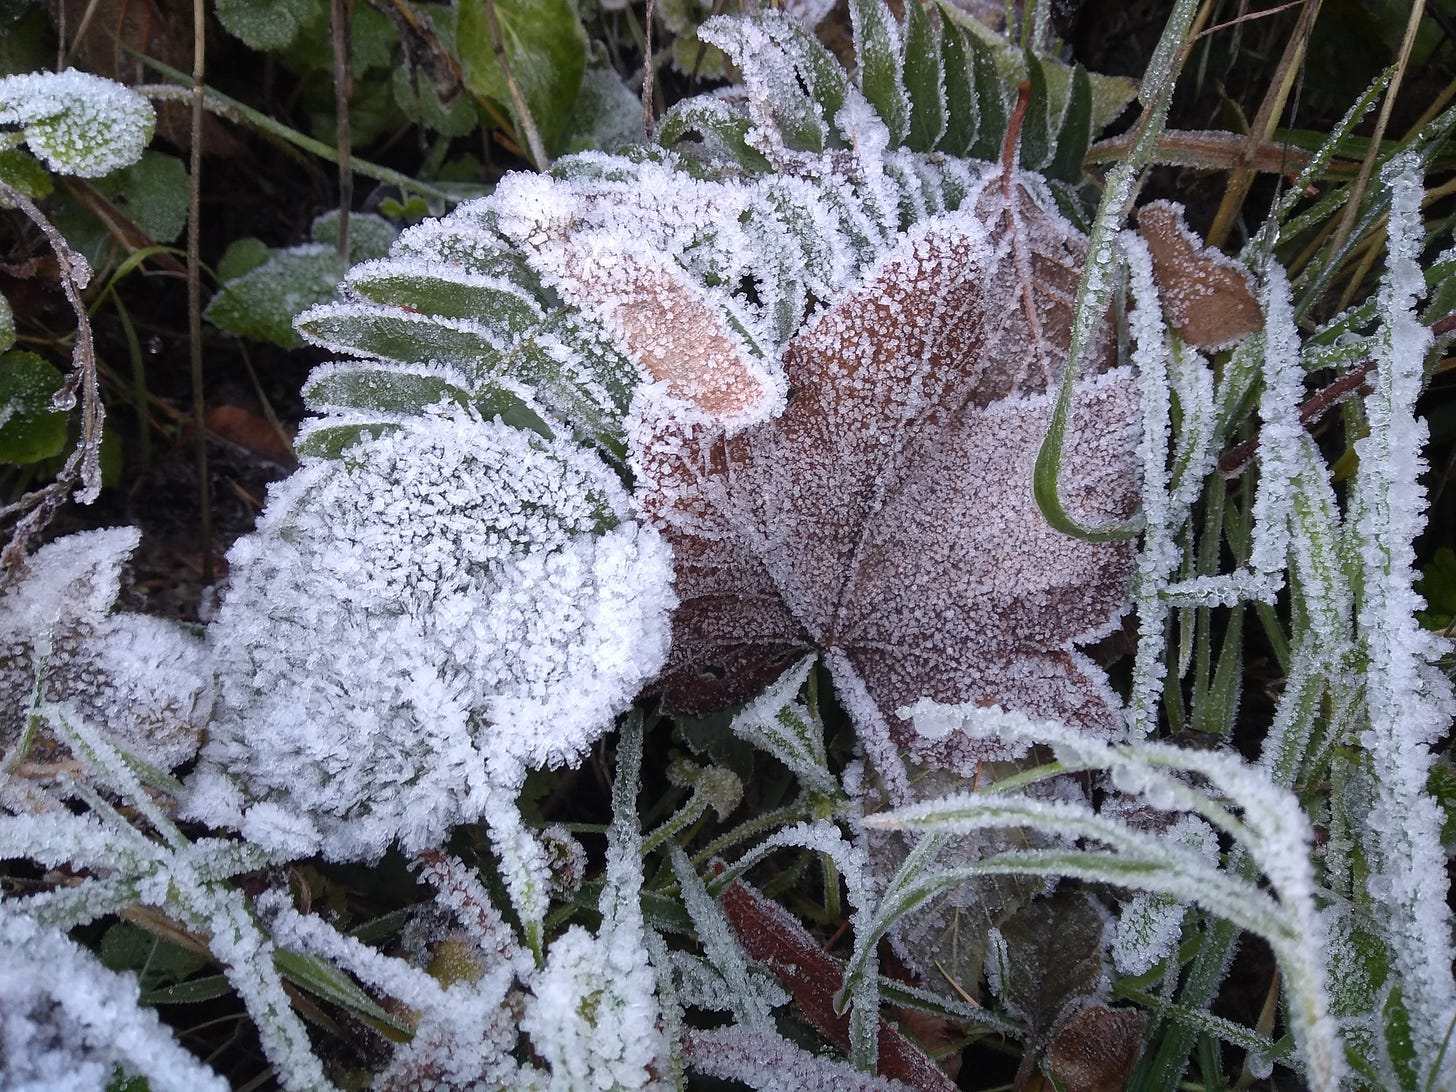 Frost growing on fallen leaves